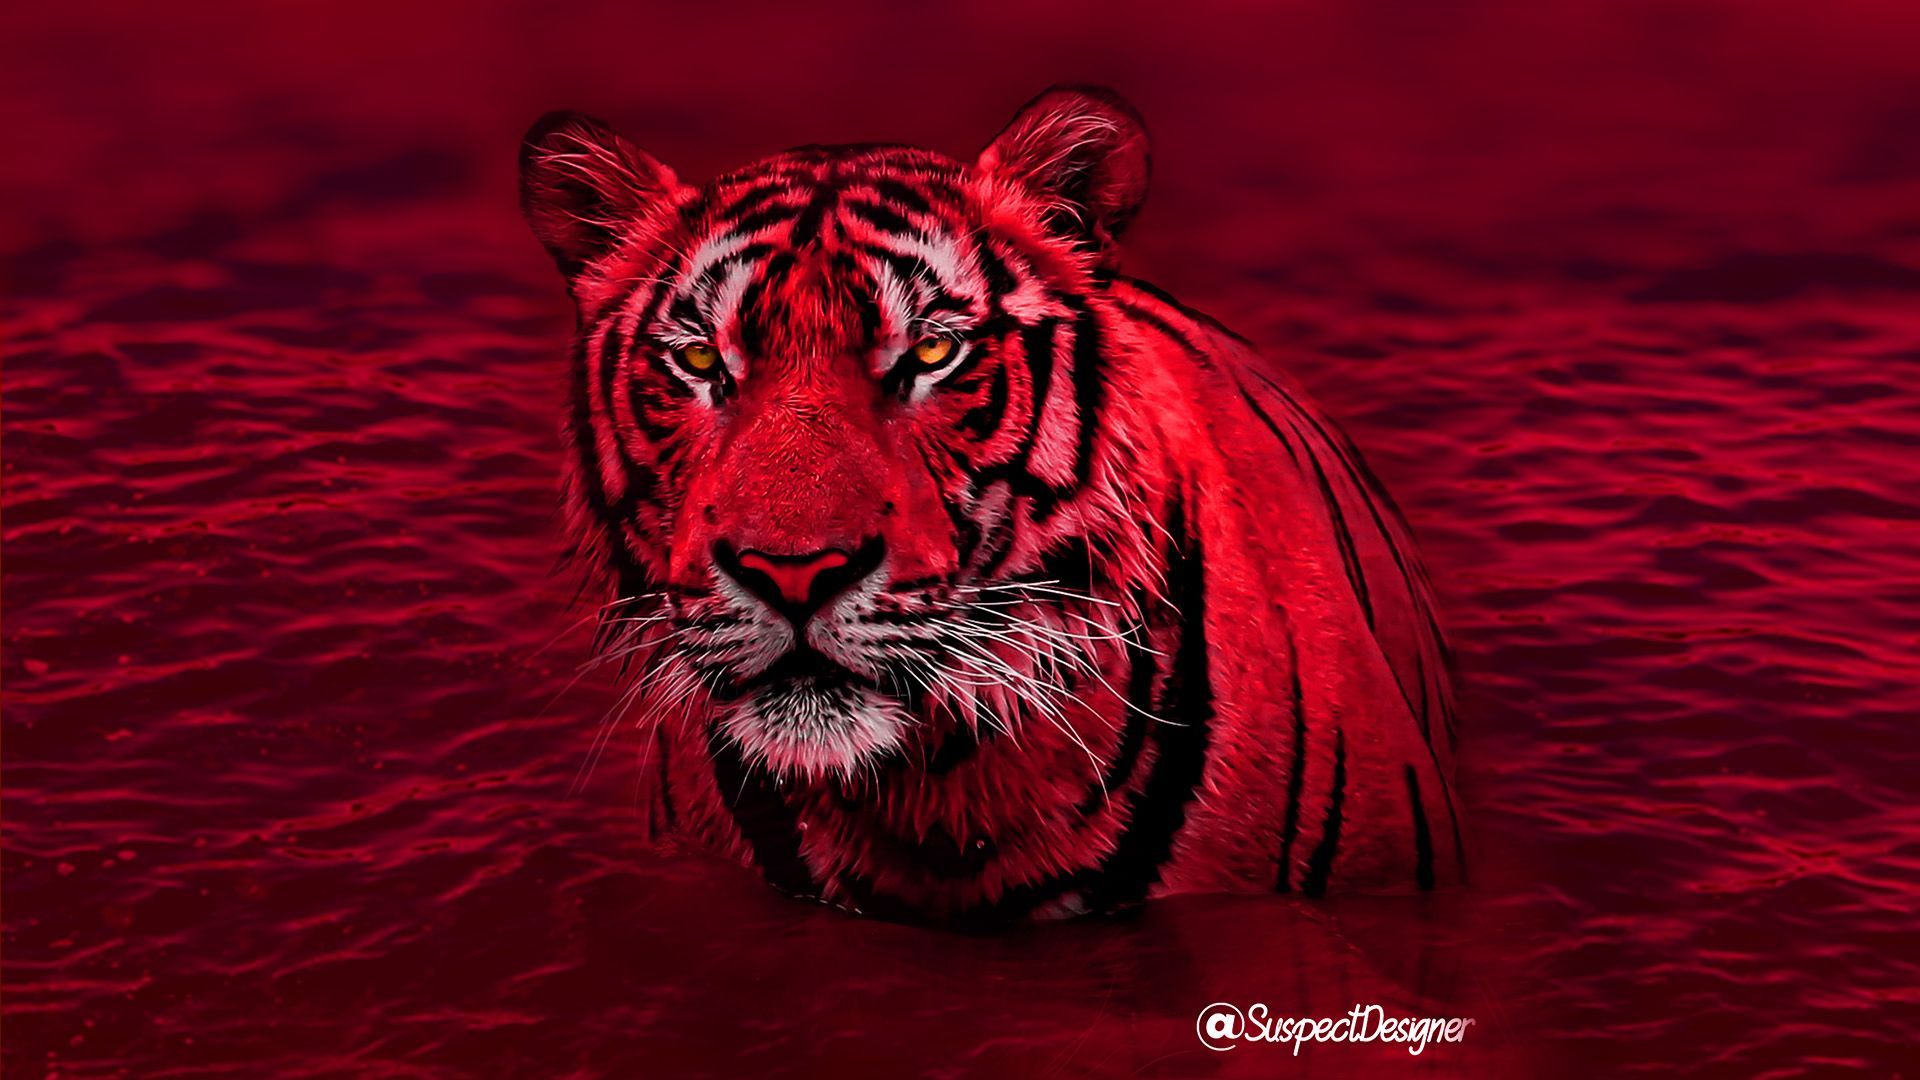 Red Tiger wallpaper - Tiger